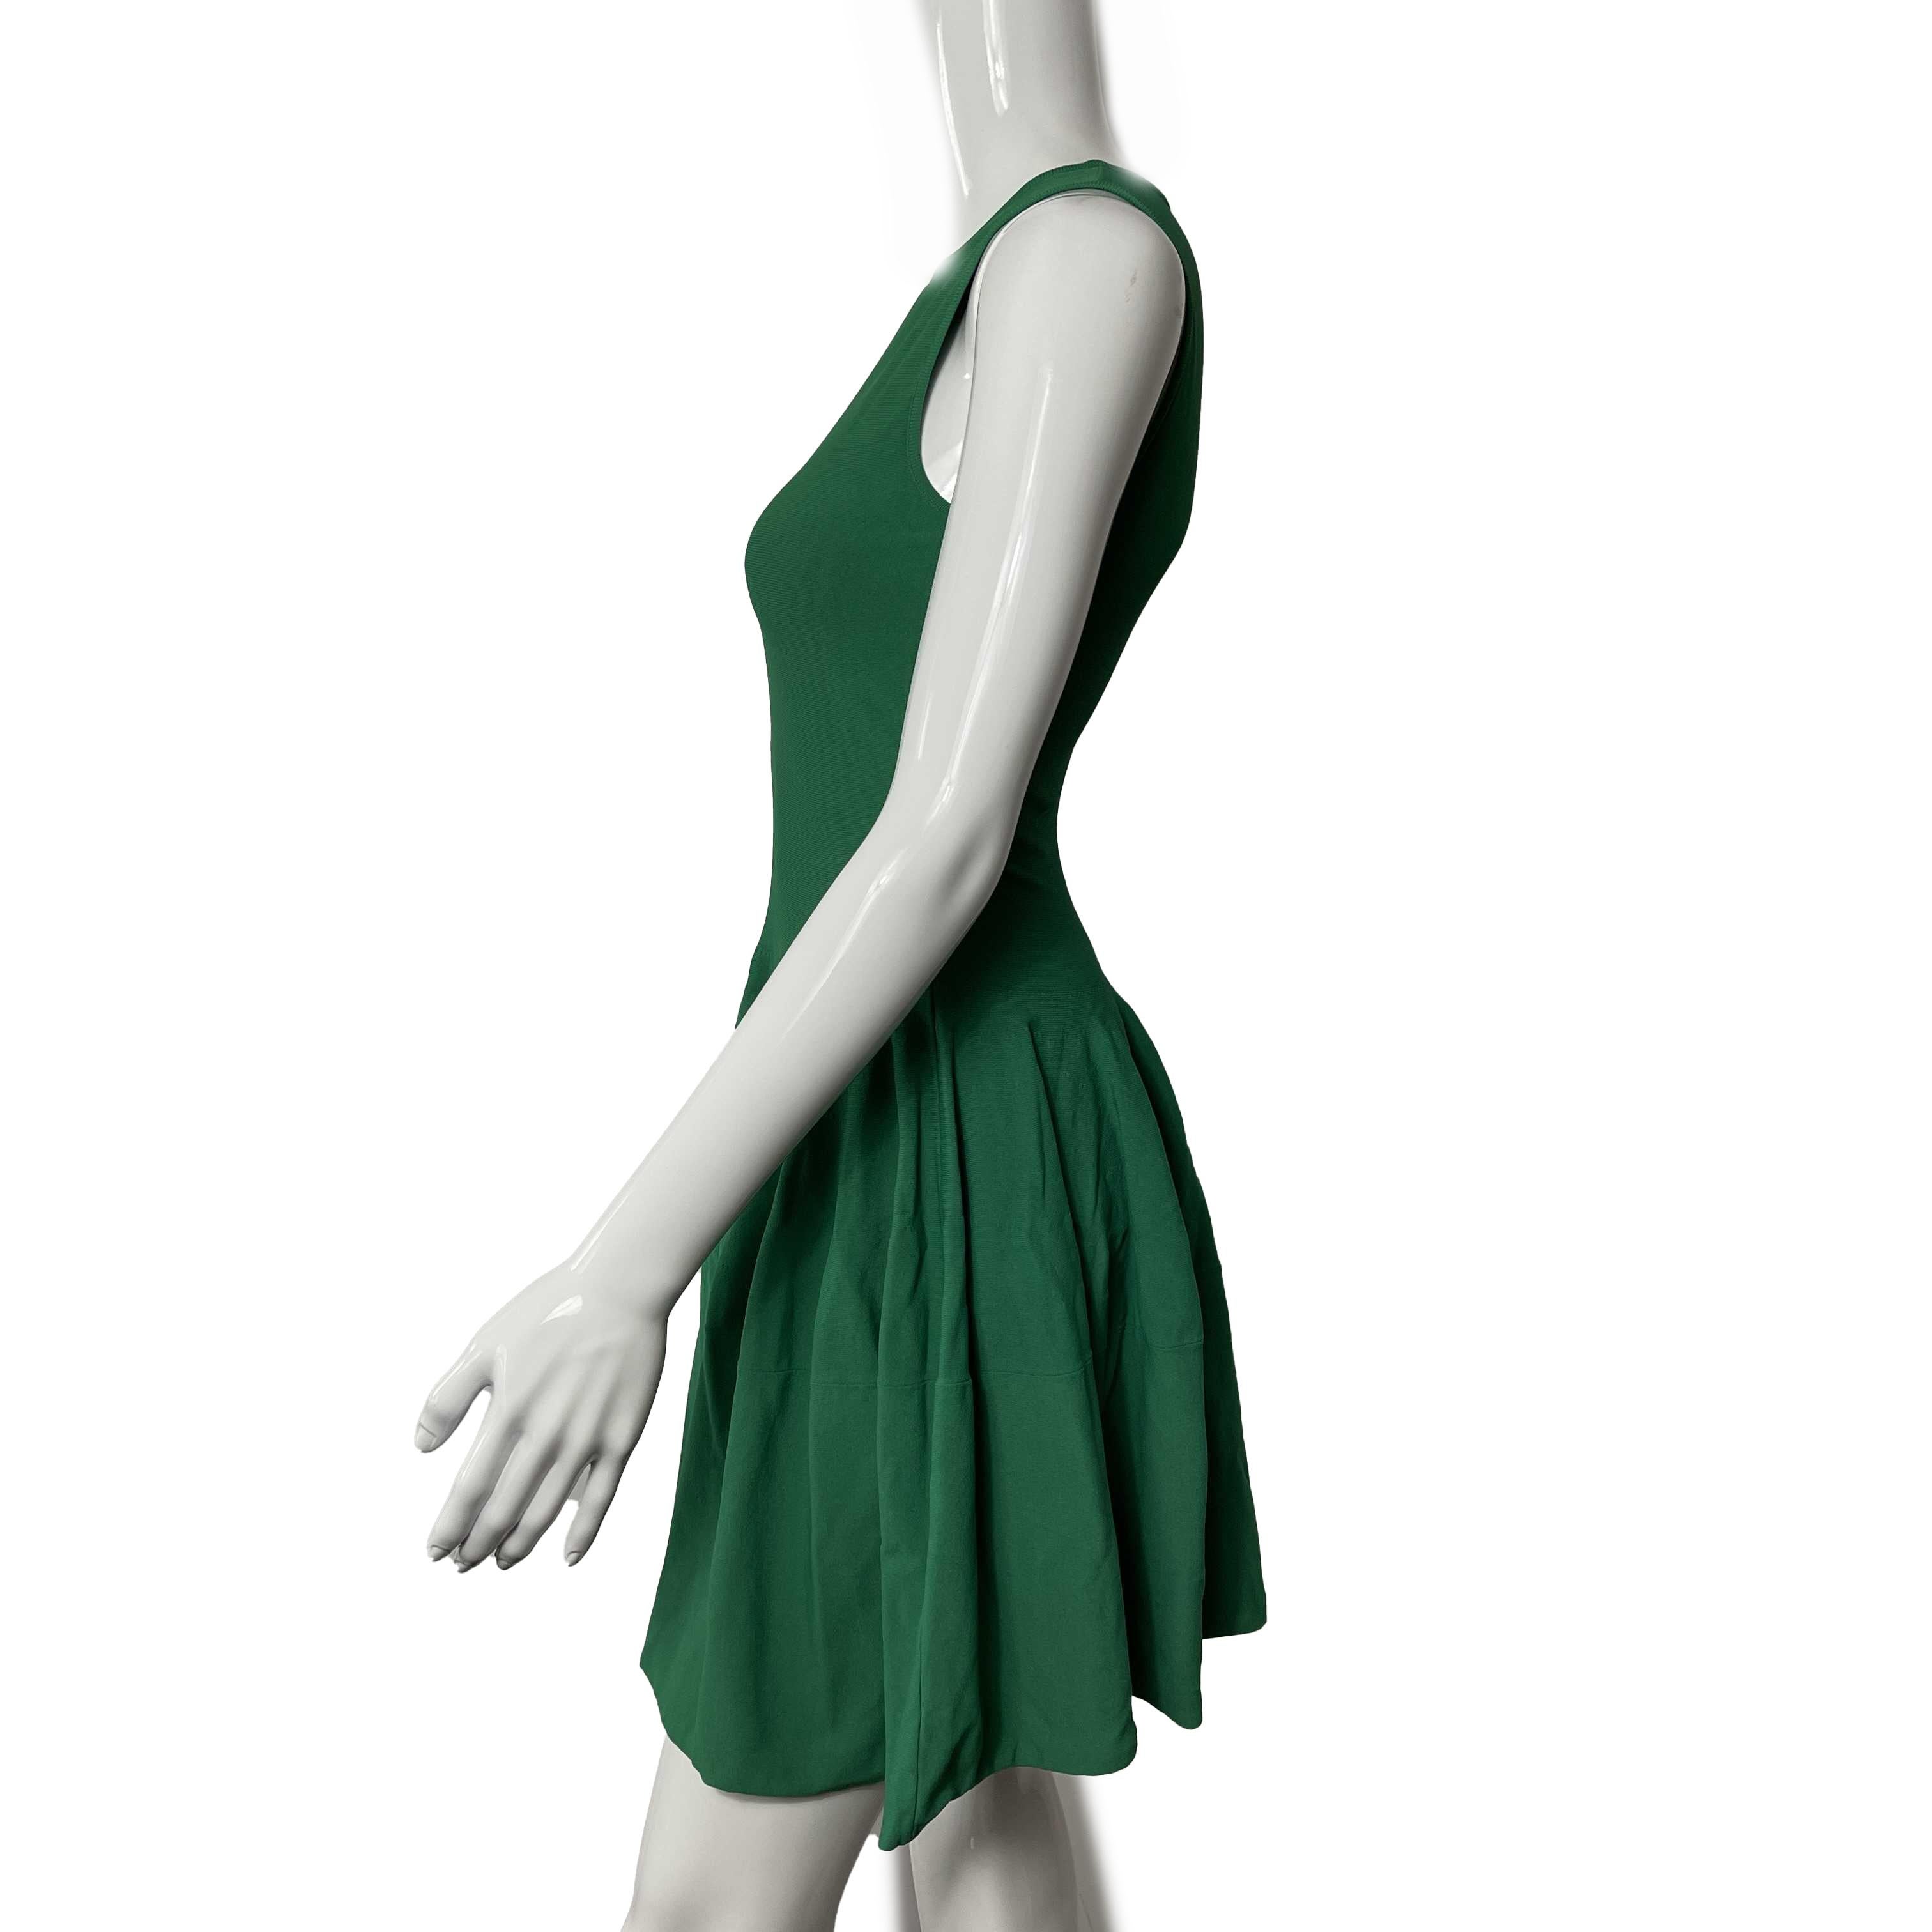 Alexander McQueen - Pristine - Solid Sleeveless Midi Flare - Green - XS - Dress

Description

Cette robe sans manches Alexander McQueen est de longueur midi avec un style évasé qui tombe comme s'il y avait des plis.
Il est de couleur verte unie,